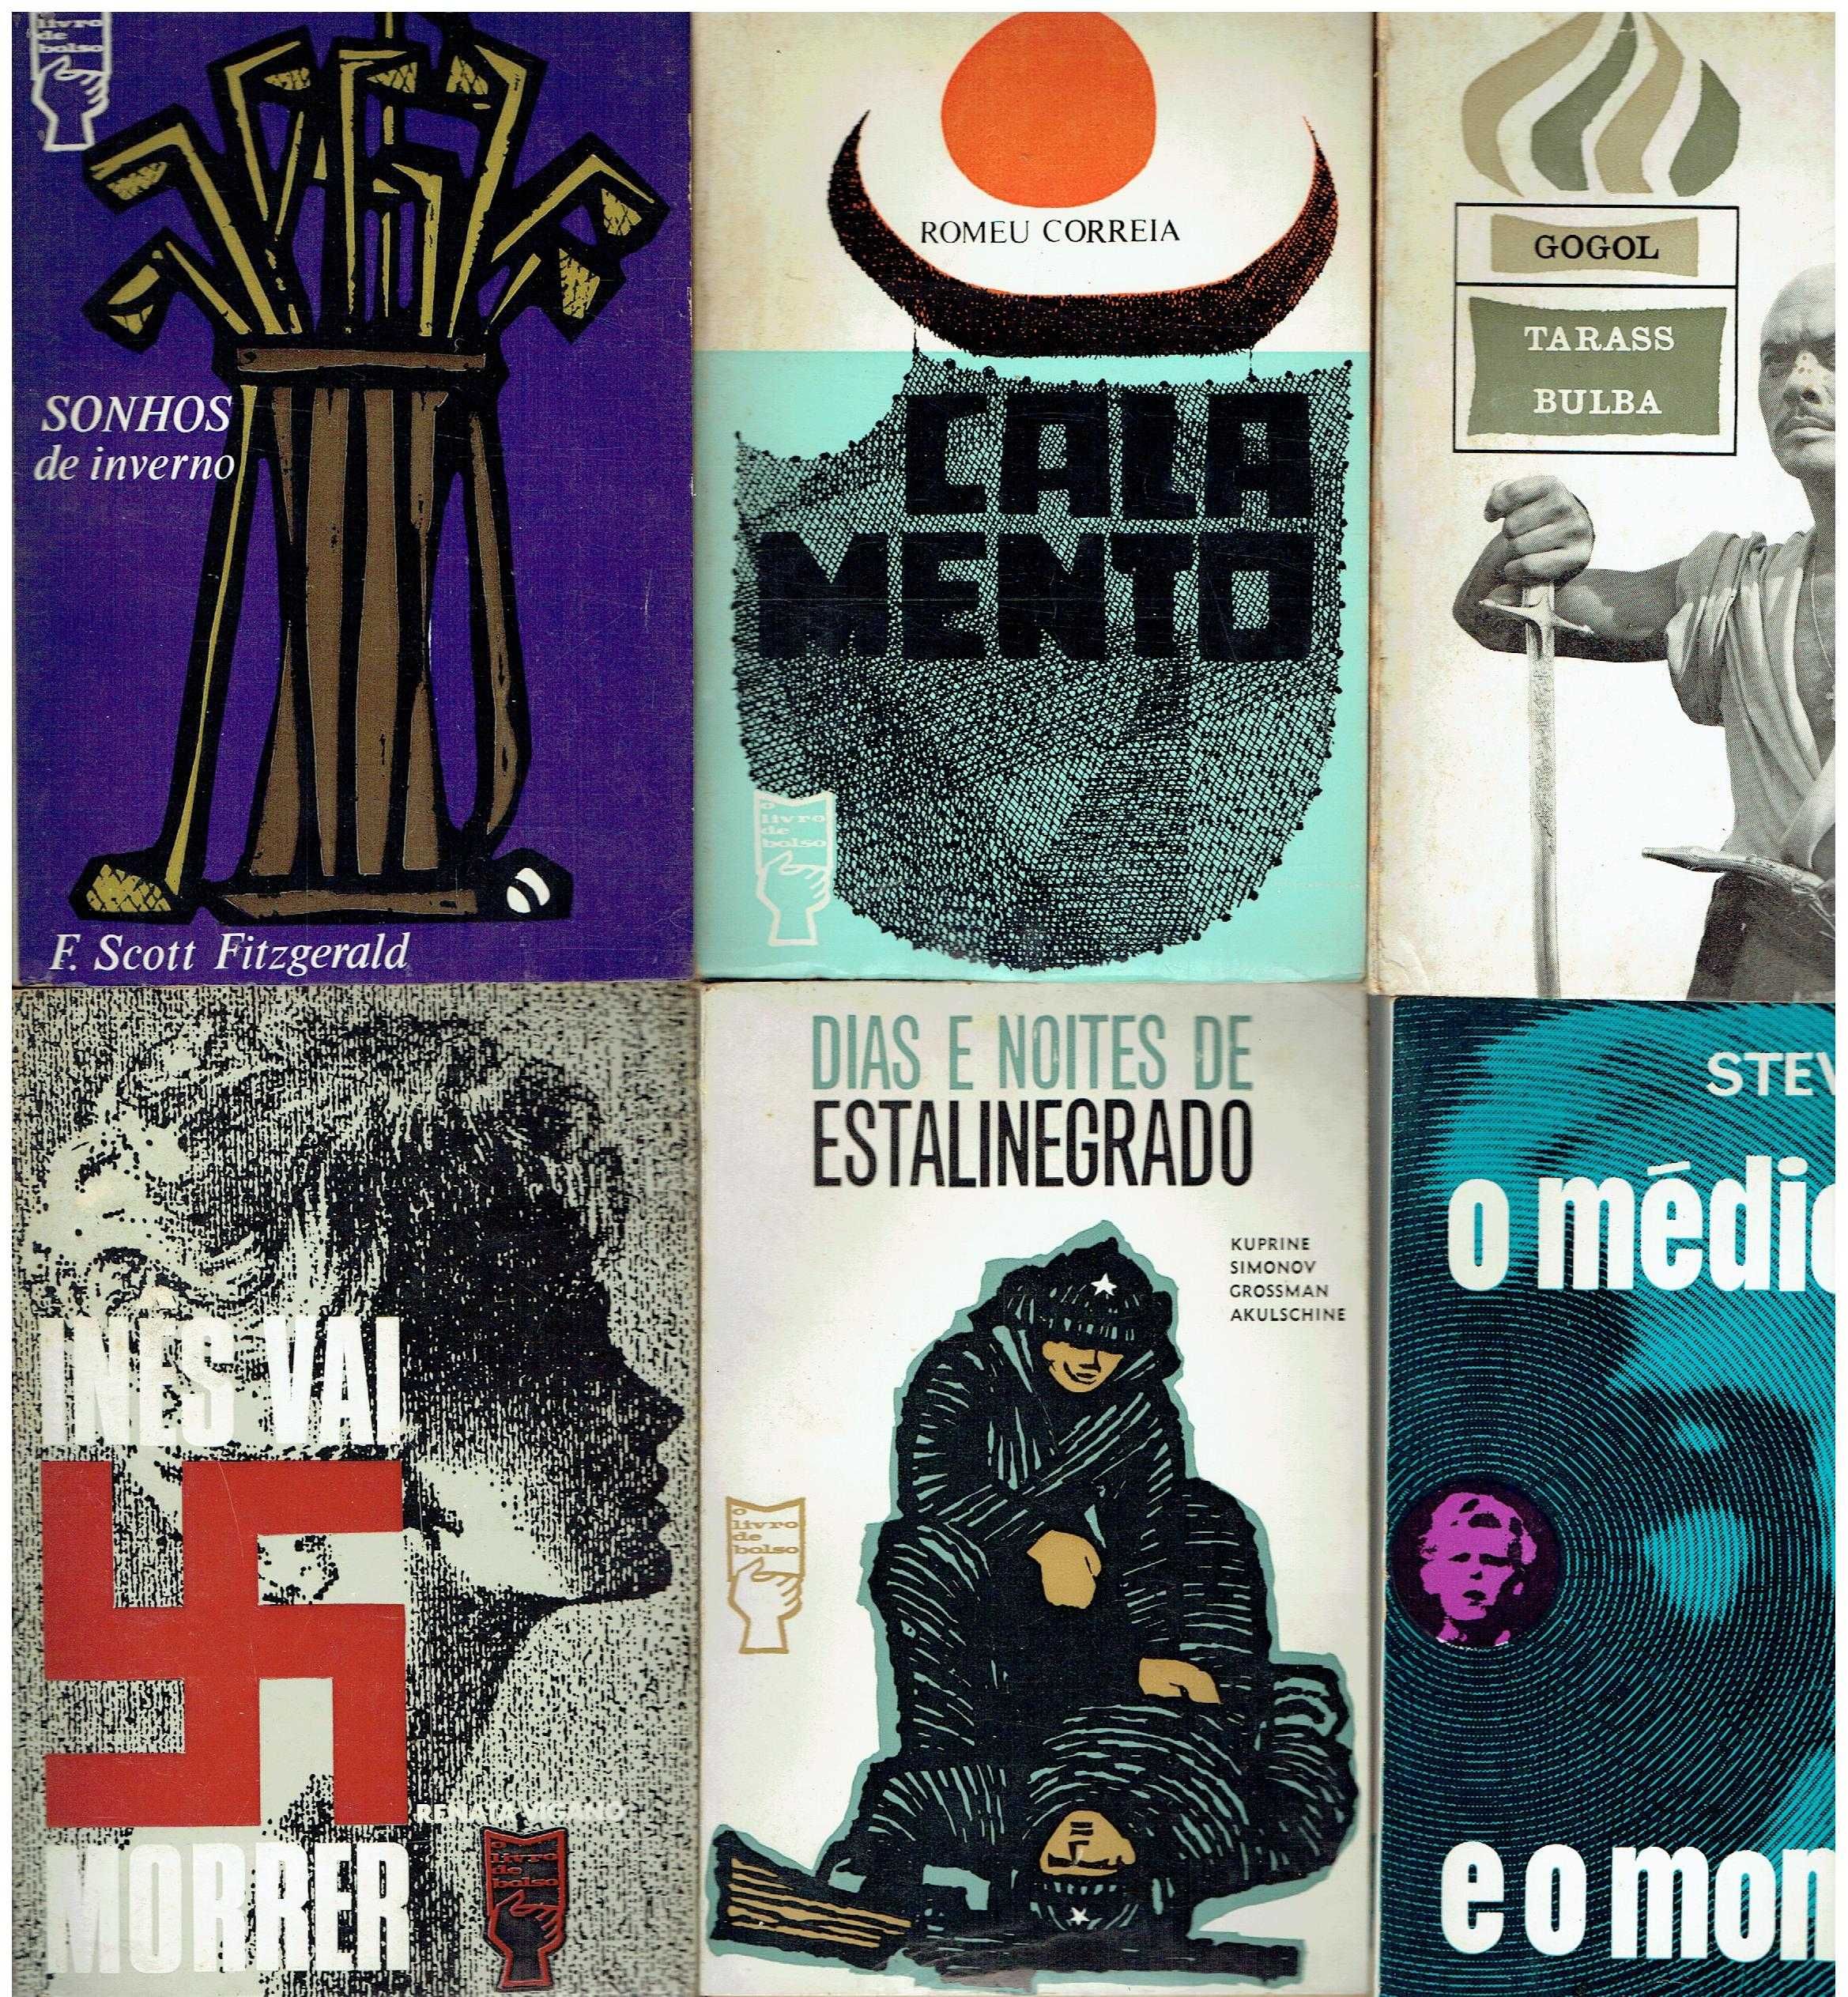 9607

Coleção Livros Bolso Portugália Editora